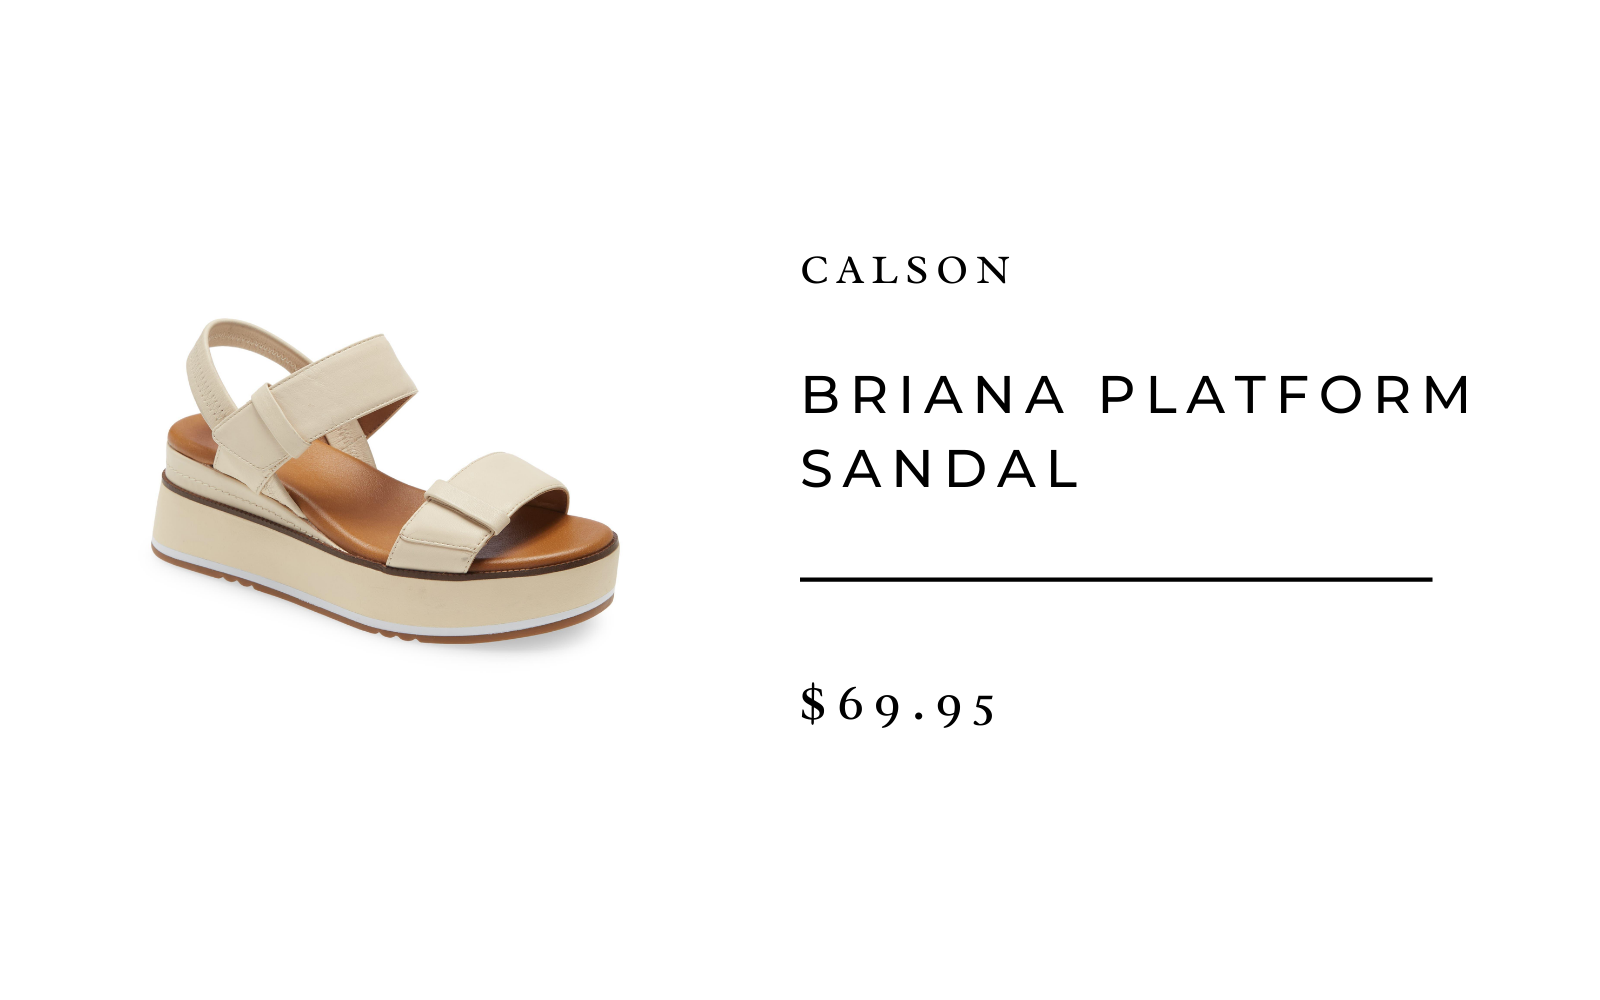 Briana Platform Sandal